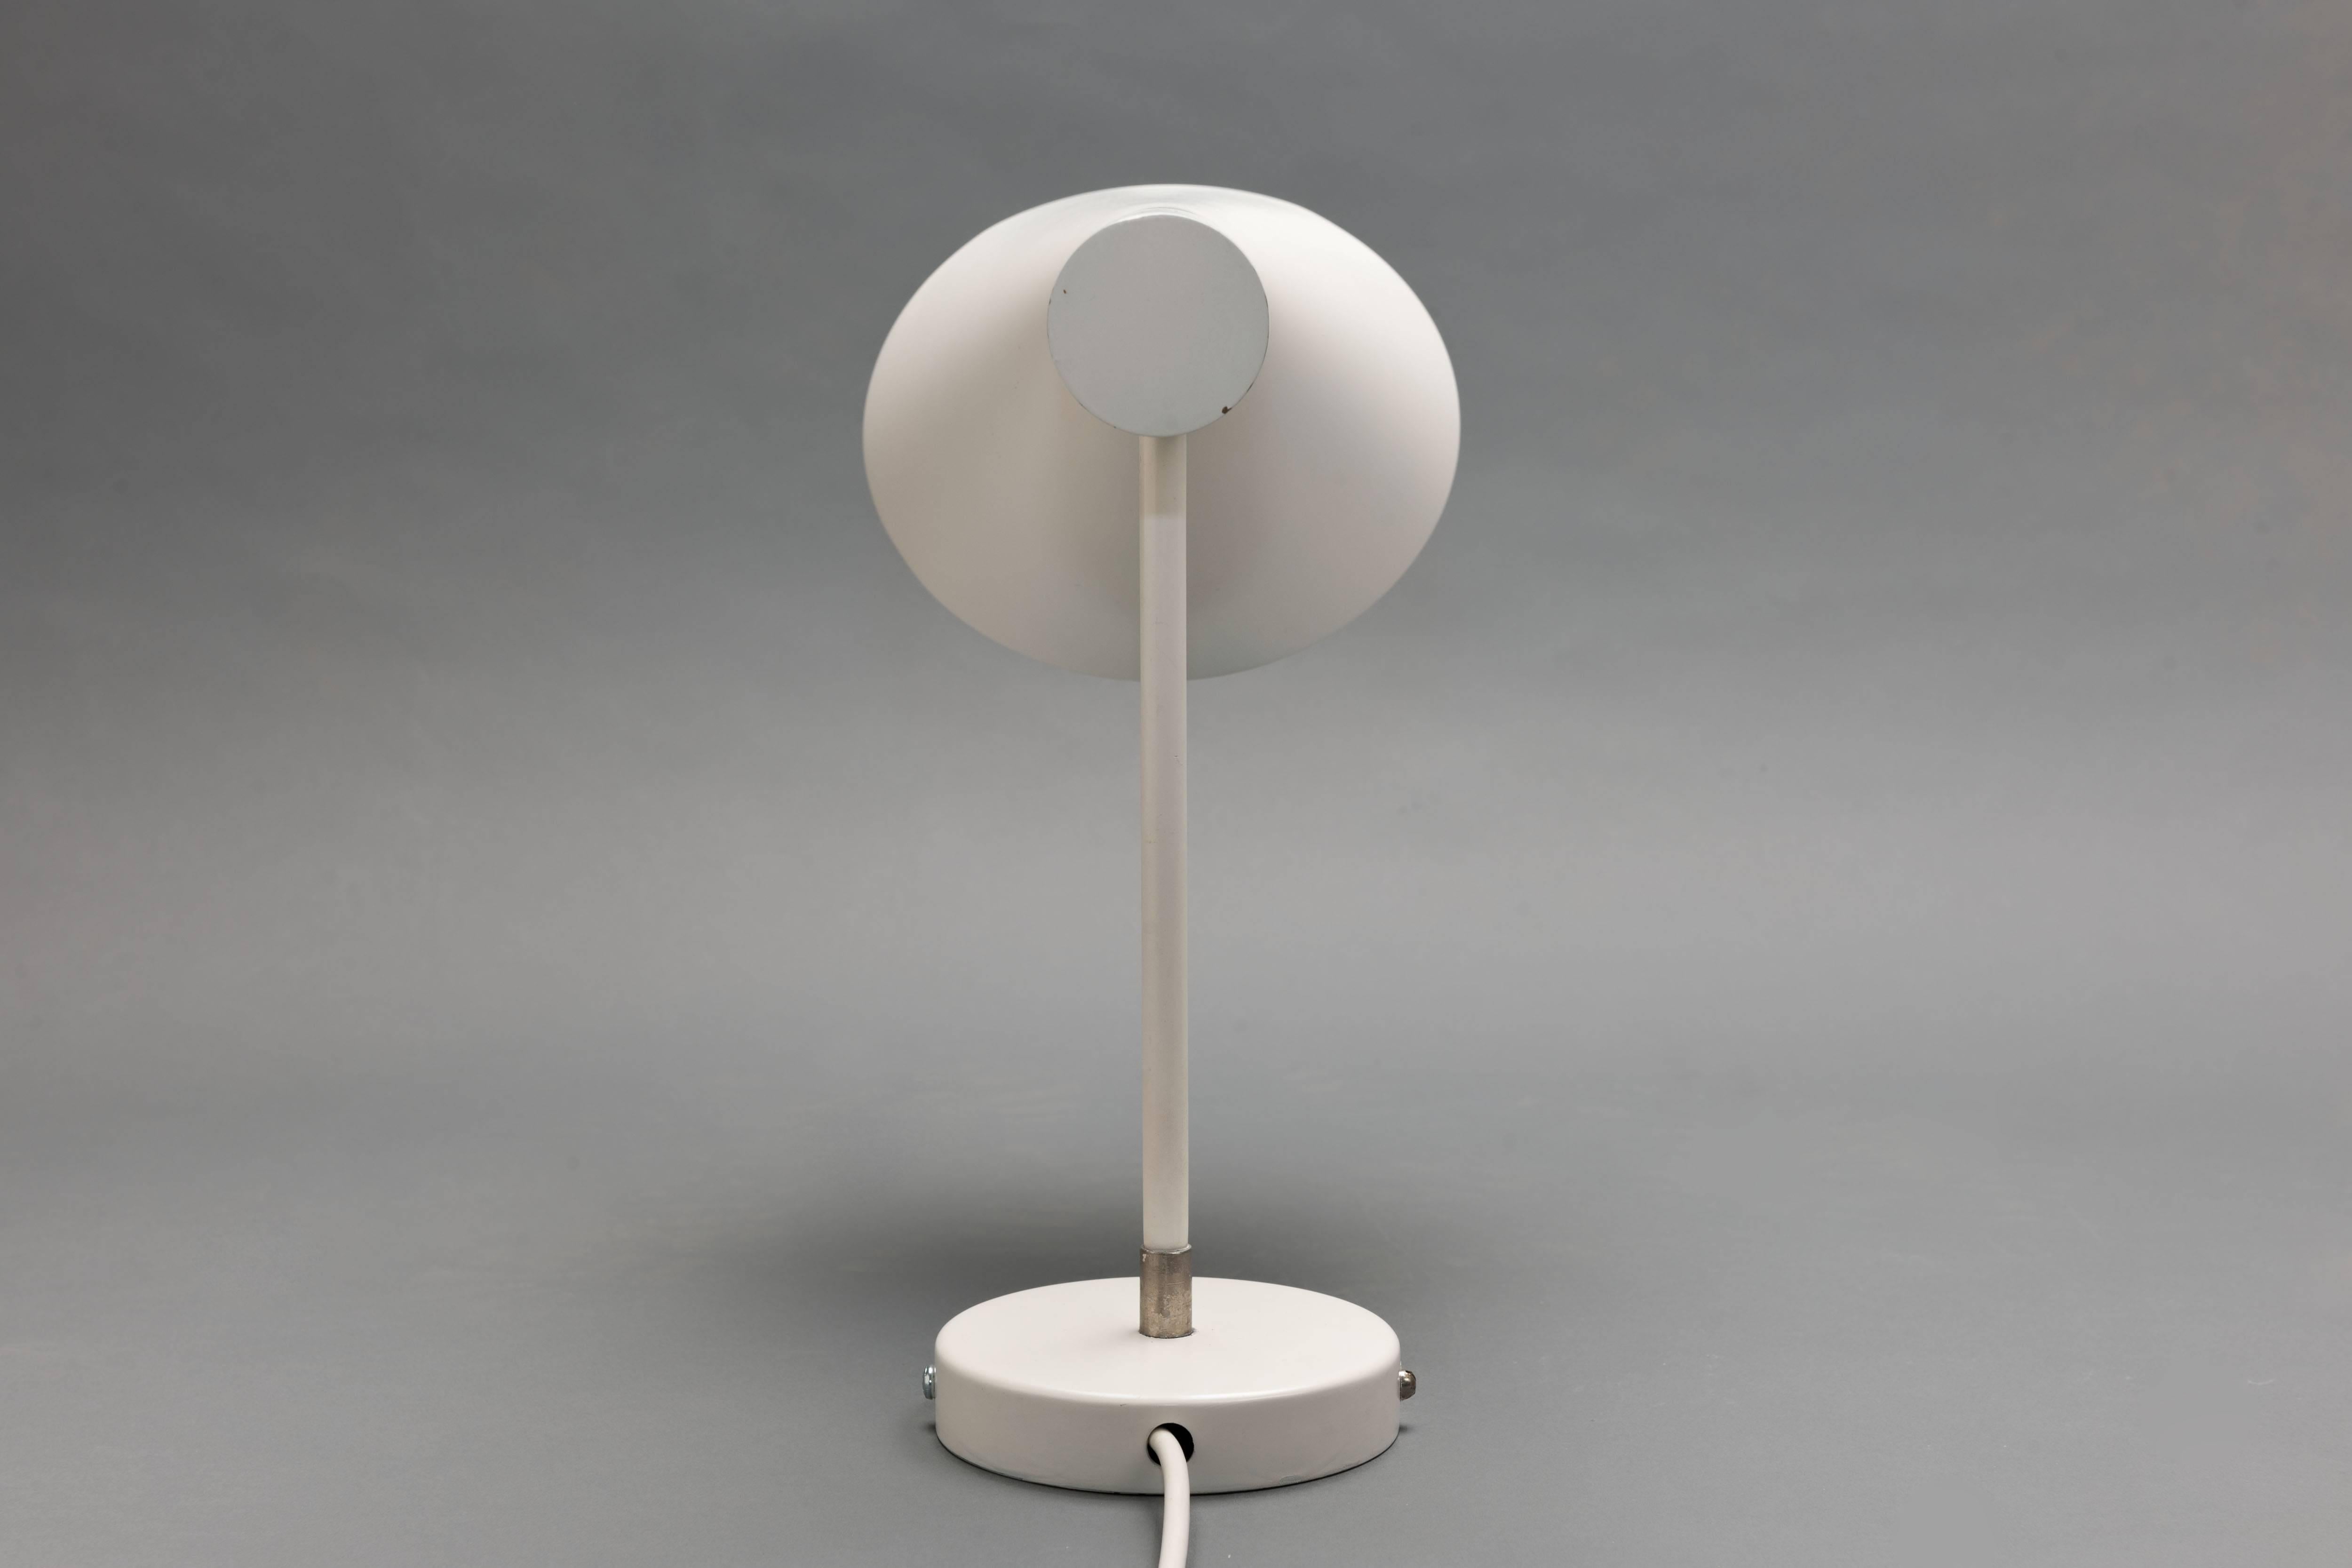 Steel Early Aj Visor Wall Lamp by Arne Jacobsen for Louis Poulsen